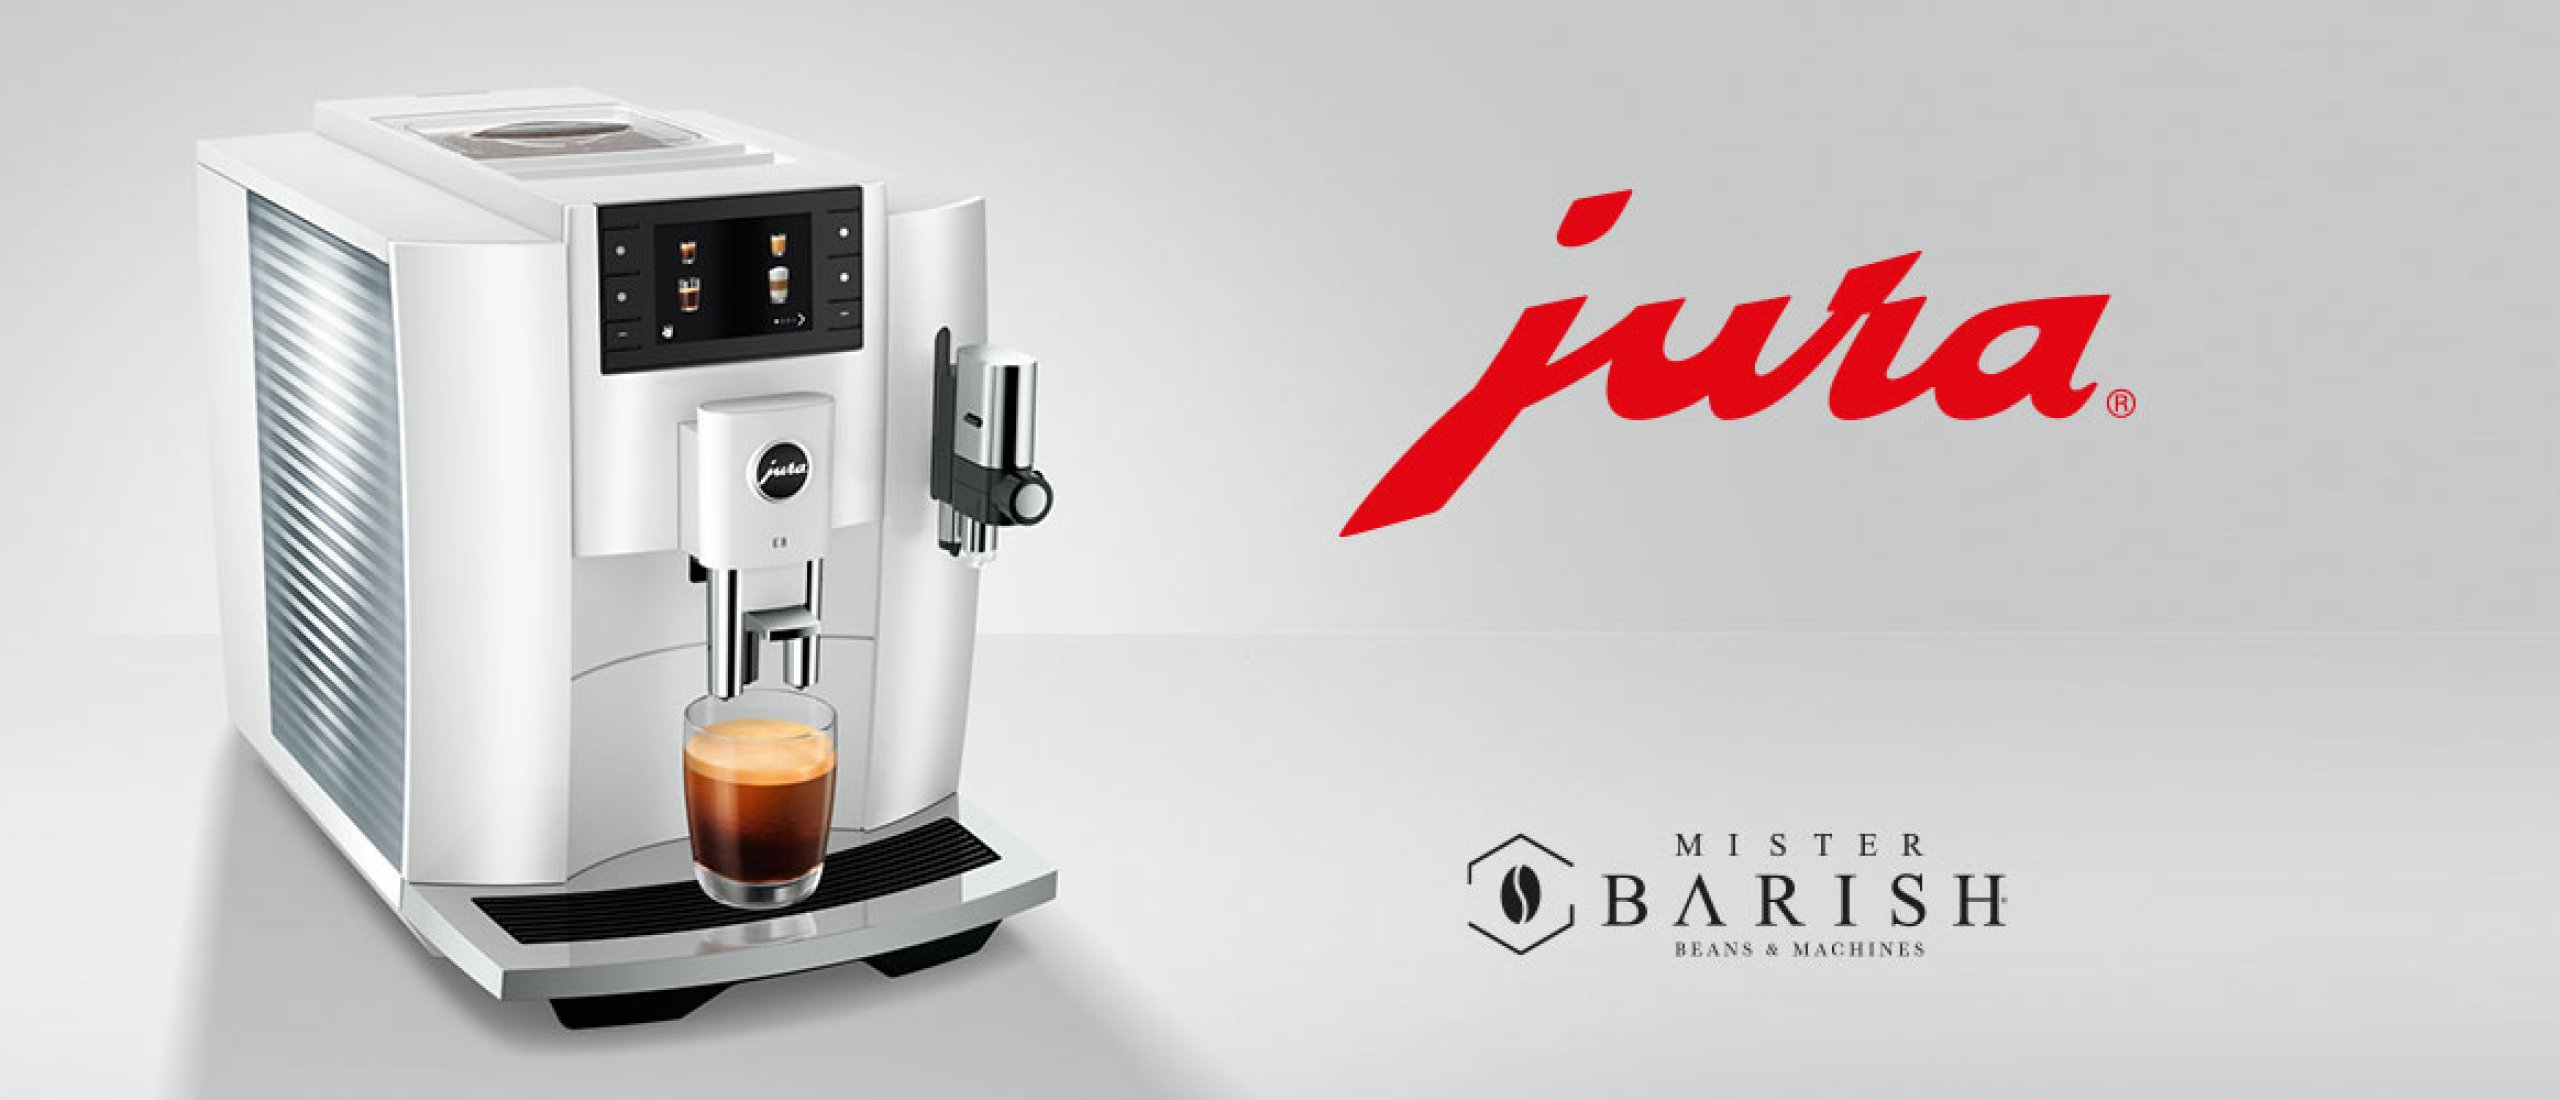 Jura E8 koffiemachine is de complete volautomaat voor thuisgebruik met  professionele koffi